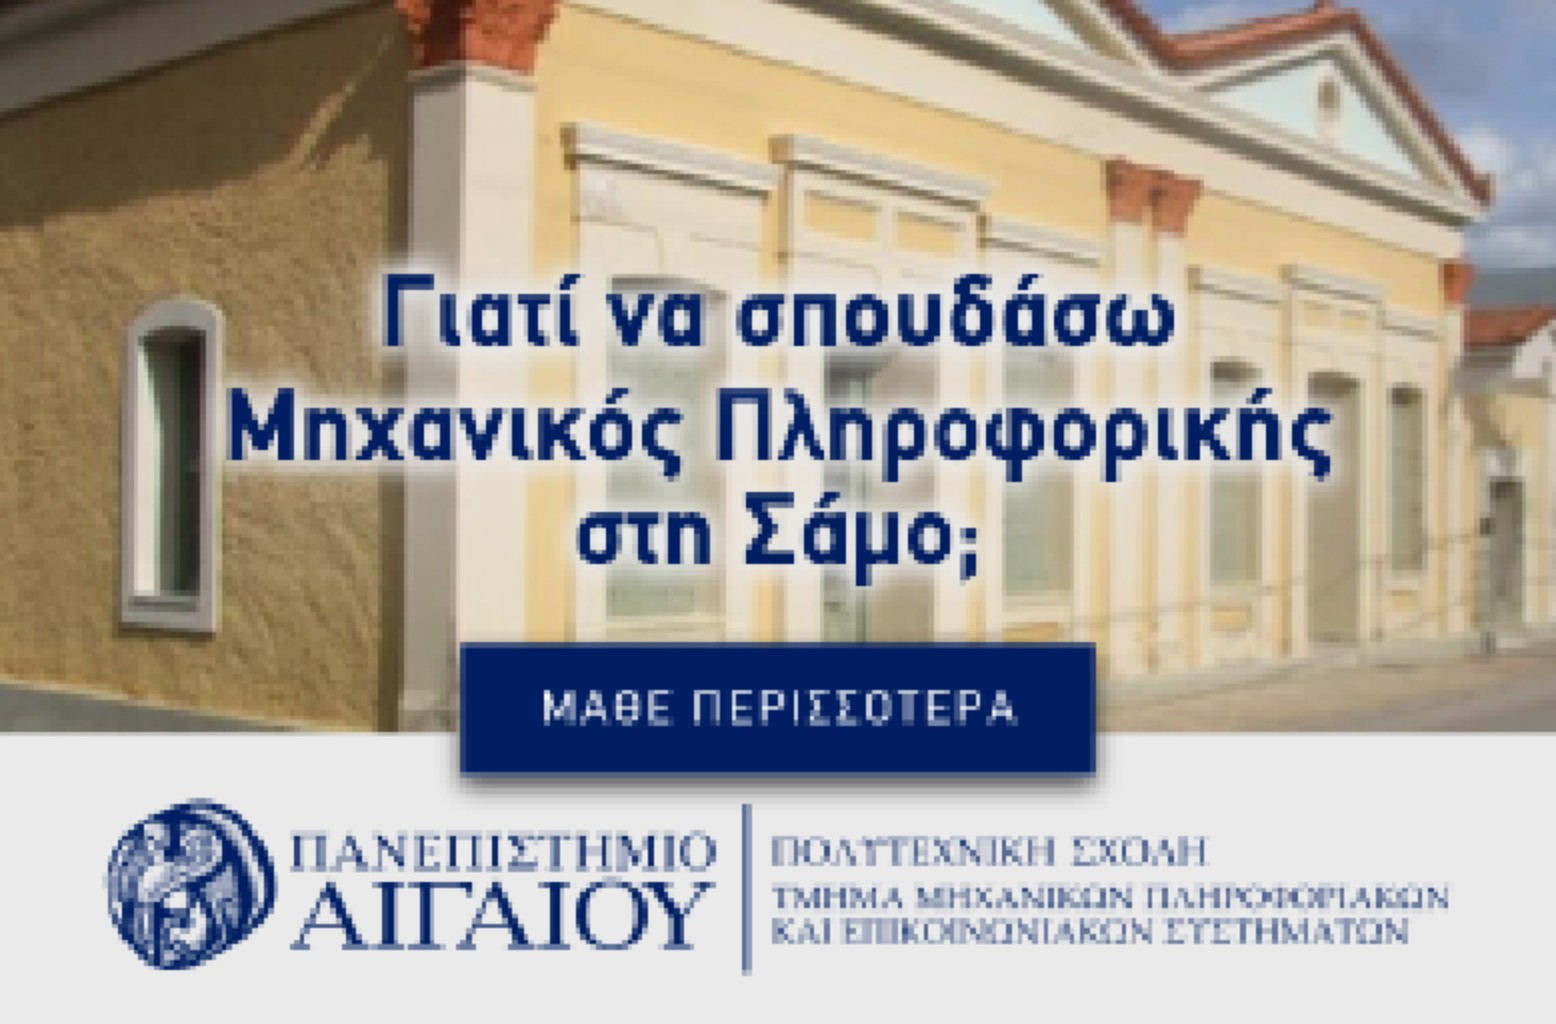 www.foititikanea.gr